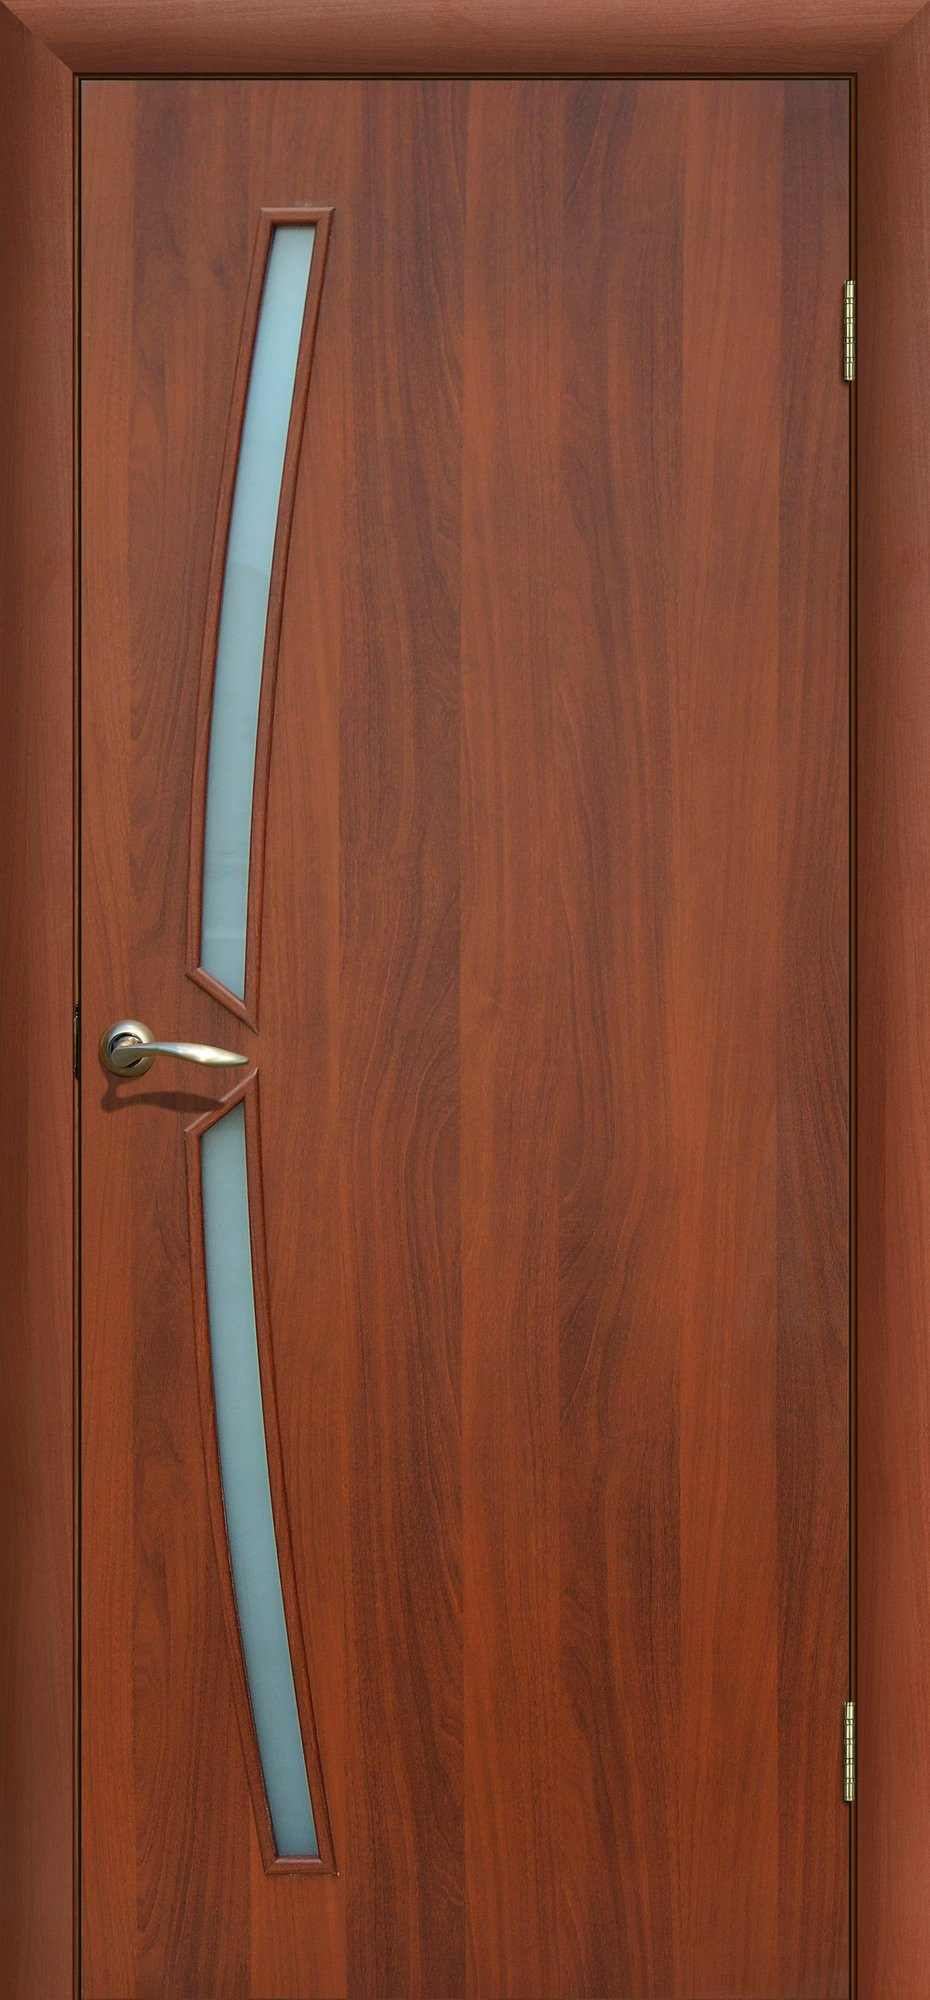 Сибирь профиль Межкомнатная дверь Радуга, арт. 7953 - фото №2